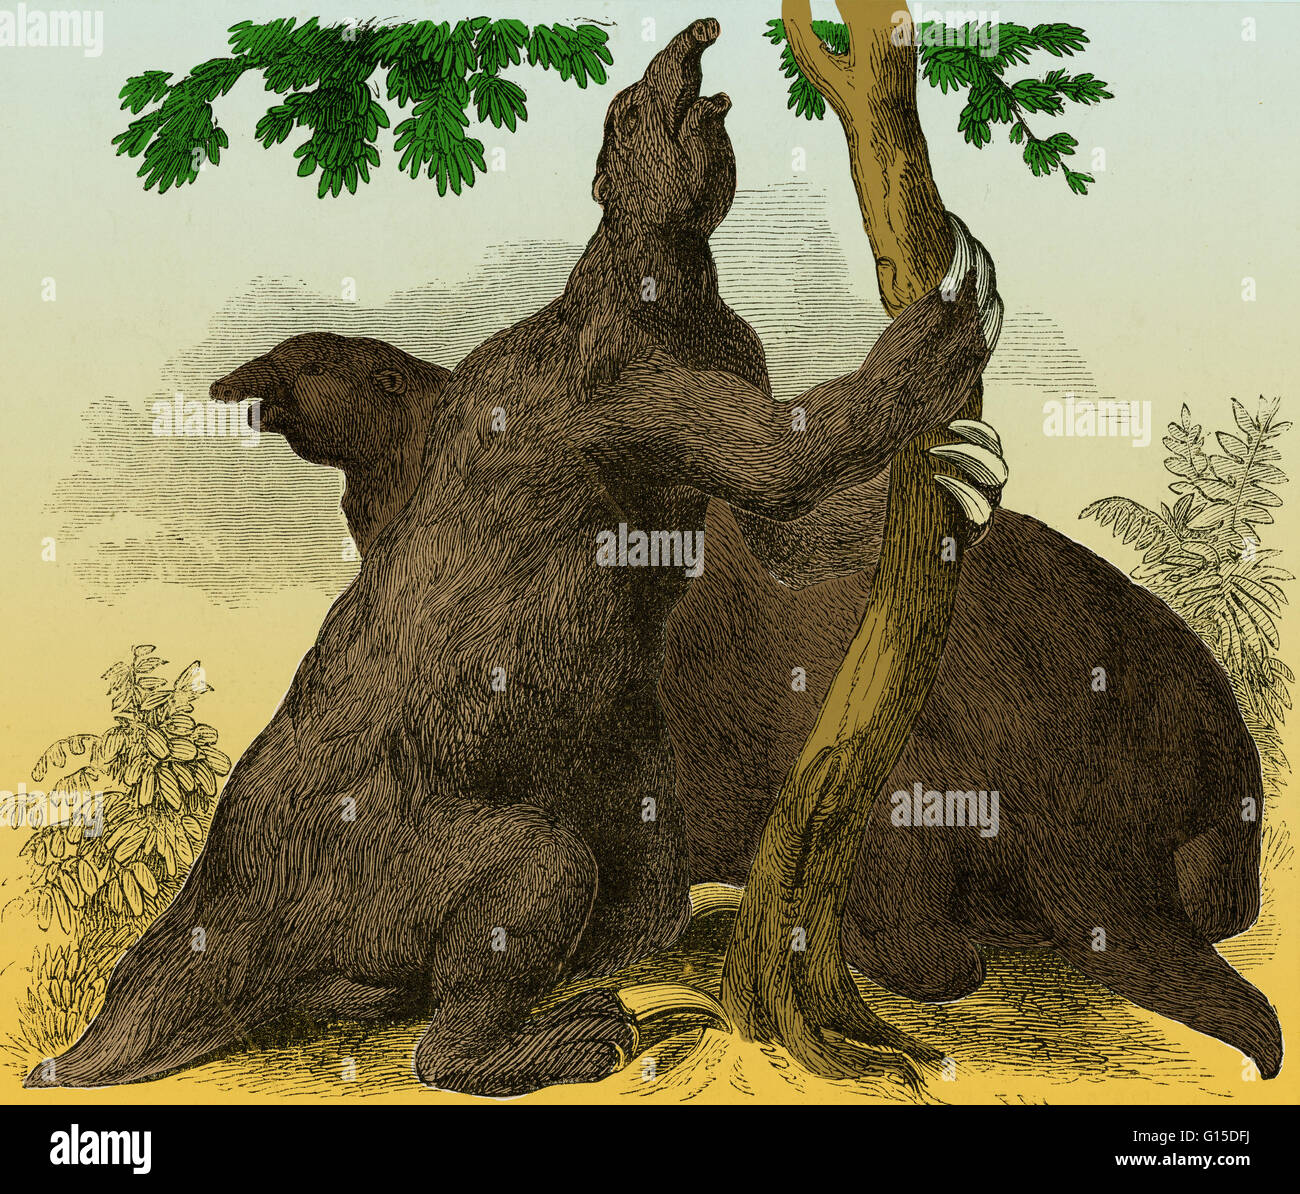 Megatherium wiederhergestellt, nach den Entwürfen von W. Hawkins. Megatherium (Great Beast) war eine Gattung der Elefanten Größe Boden Faultiere endemisch in Mittelamerika und Südamerika, die aus dem Pliozän bis Pleistozän Epochen gelebt. Megatherium war ein o Stockfoto